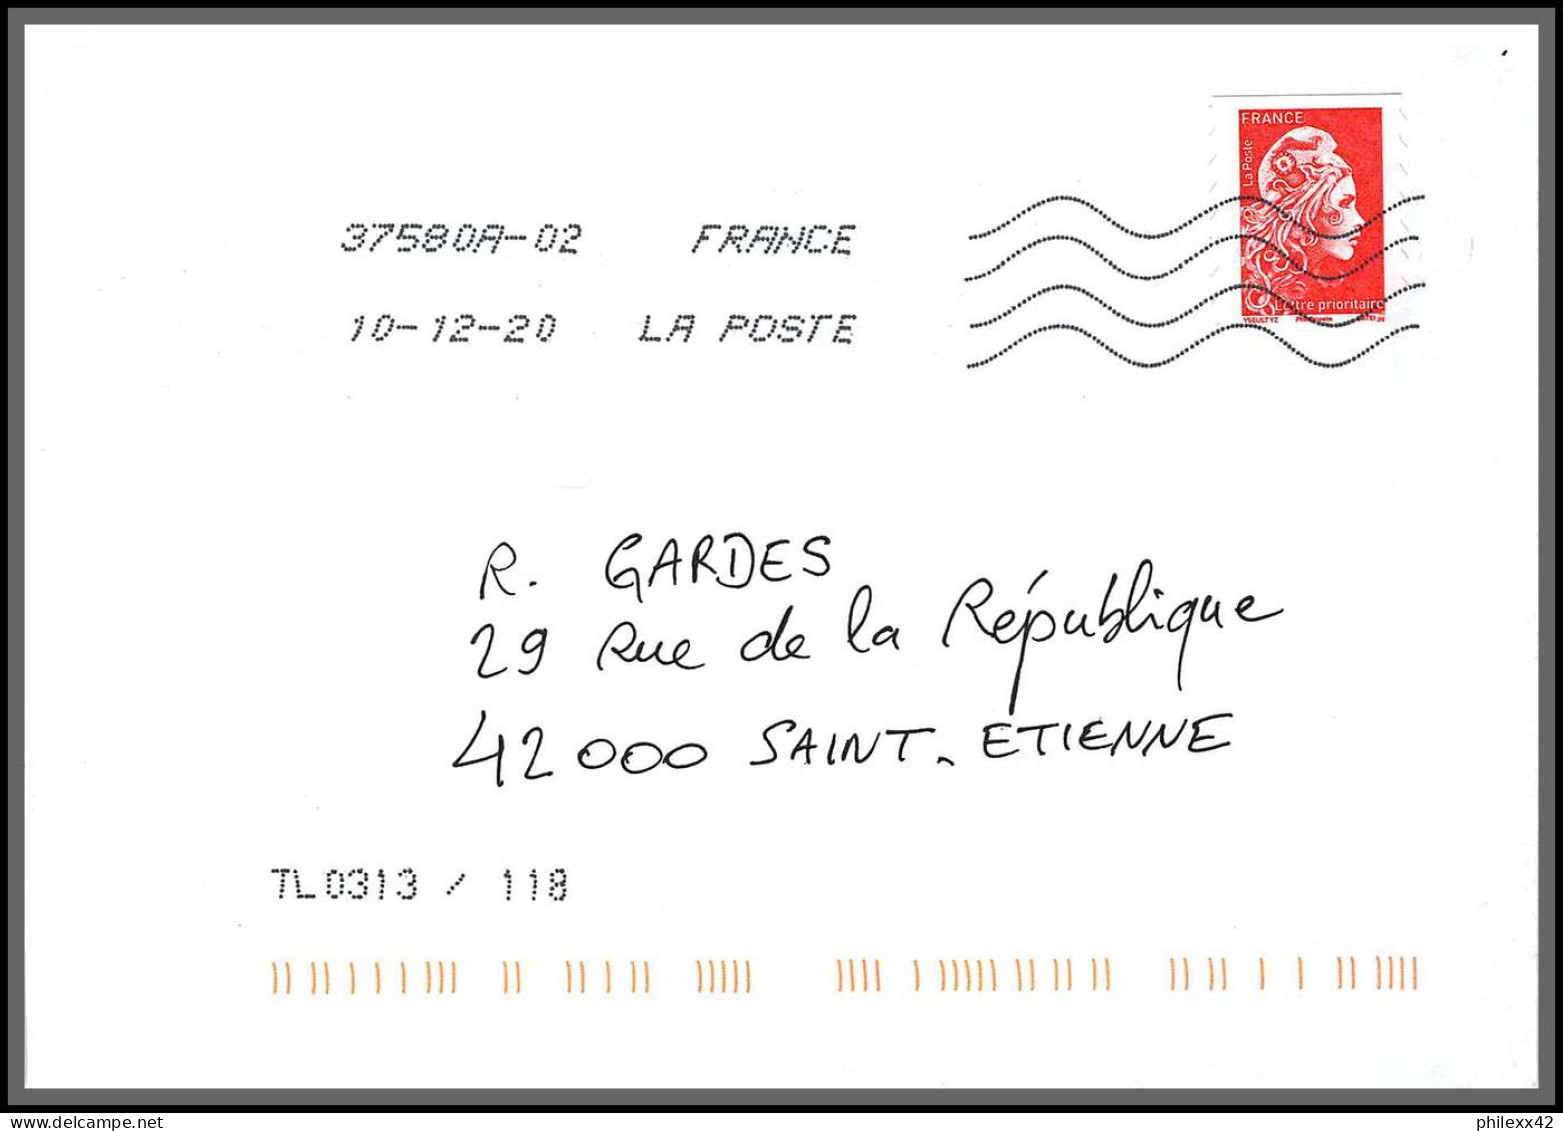 95812 - lot de 98 courriers lettres enveloppes période du second confinement COVID 30 octobre au 15 decembre 2020 